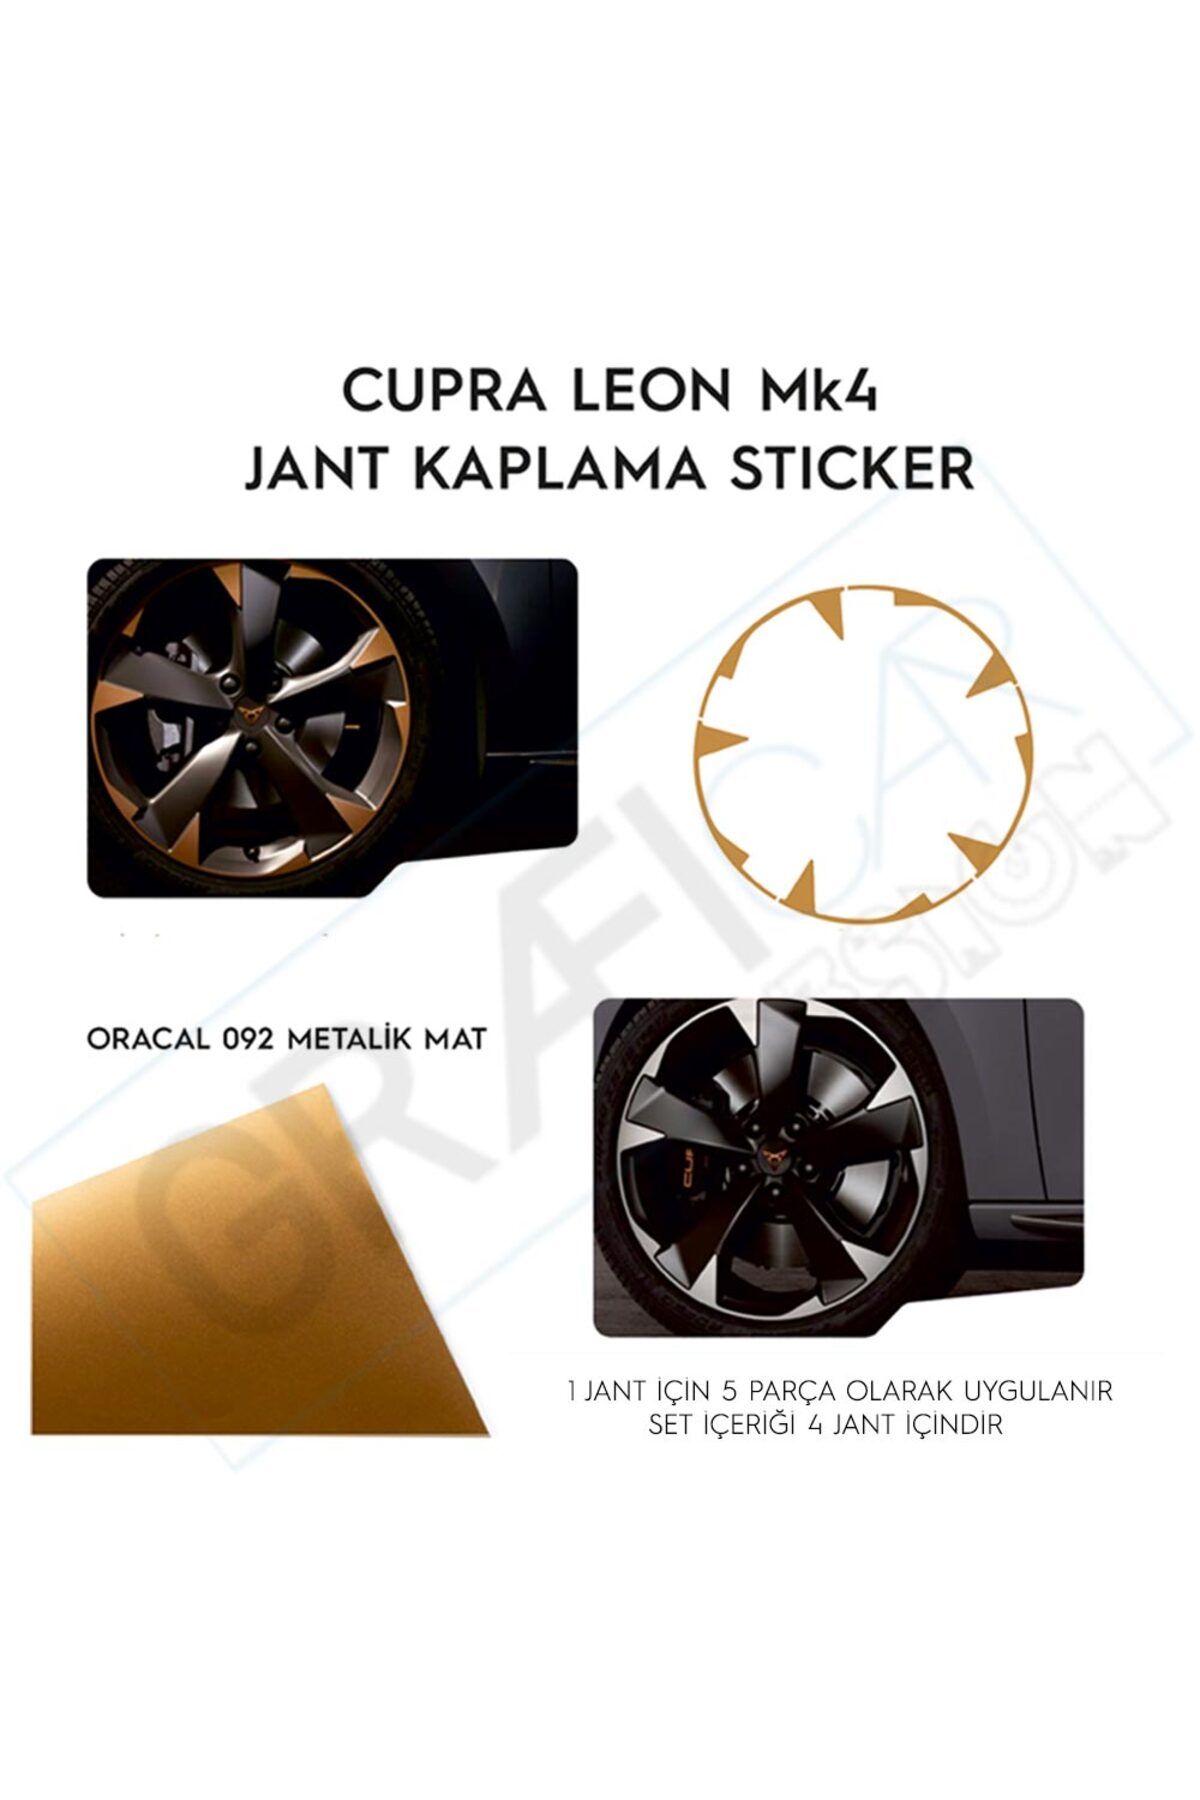 GRAFİCAR Cupra Leon MK4 Jant Kaplama Sticker Set Kolay Uygulama-Uzun Ömürlü-Estetik Görünüm/Metalik Mat Bakır